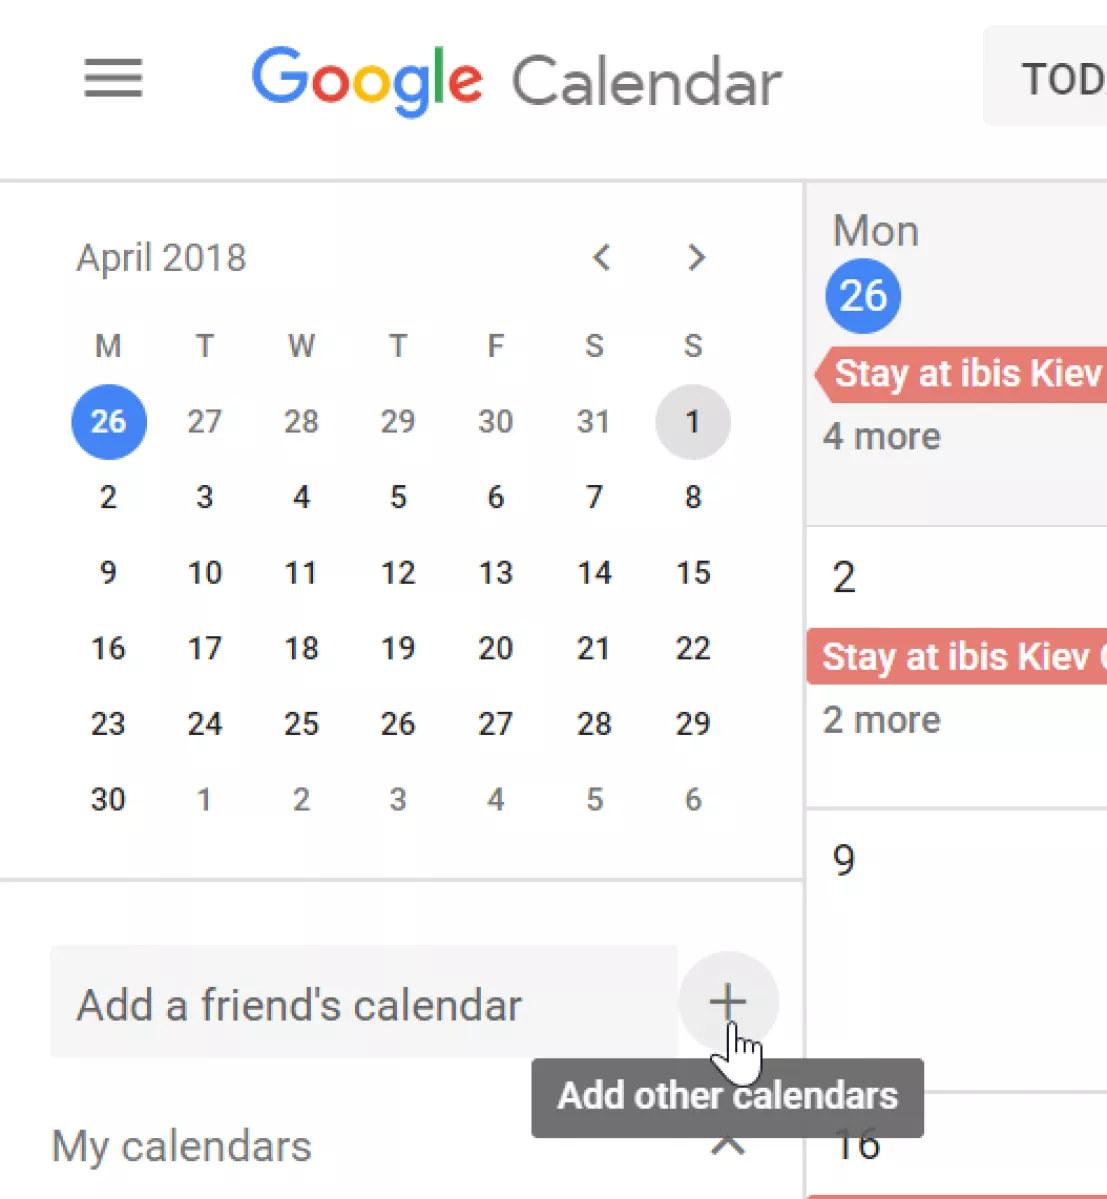 Гугл календари вход в личный. Гугл календарь. Календарь Google фото. Календарь гугл в мобильном. Красивый гугл календарь.